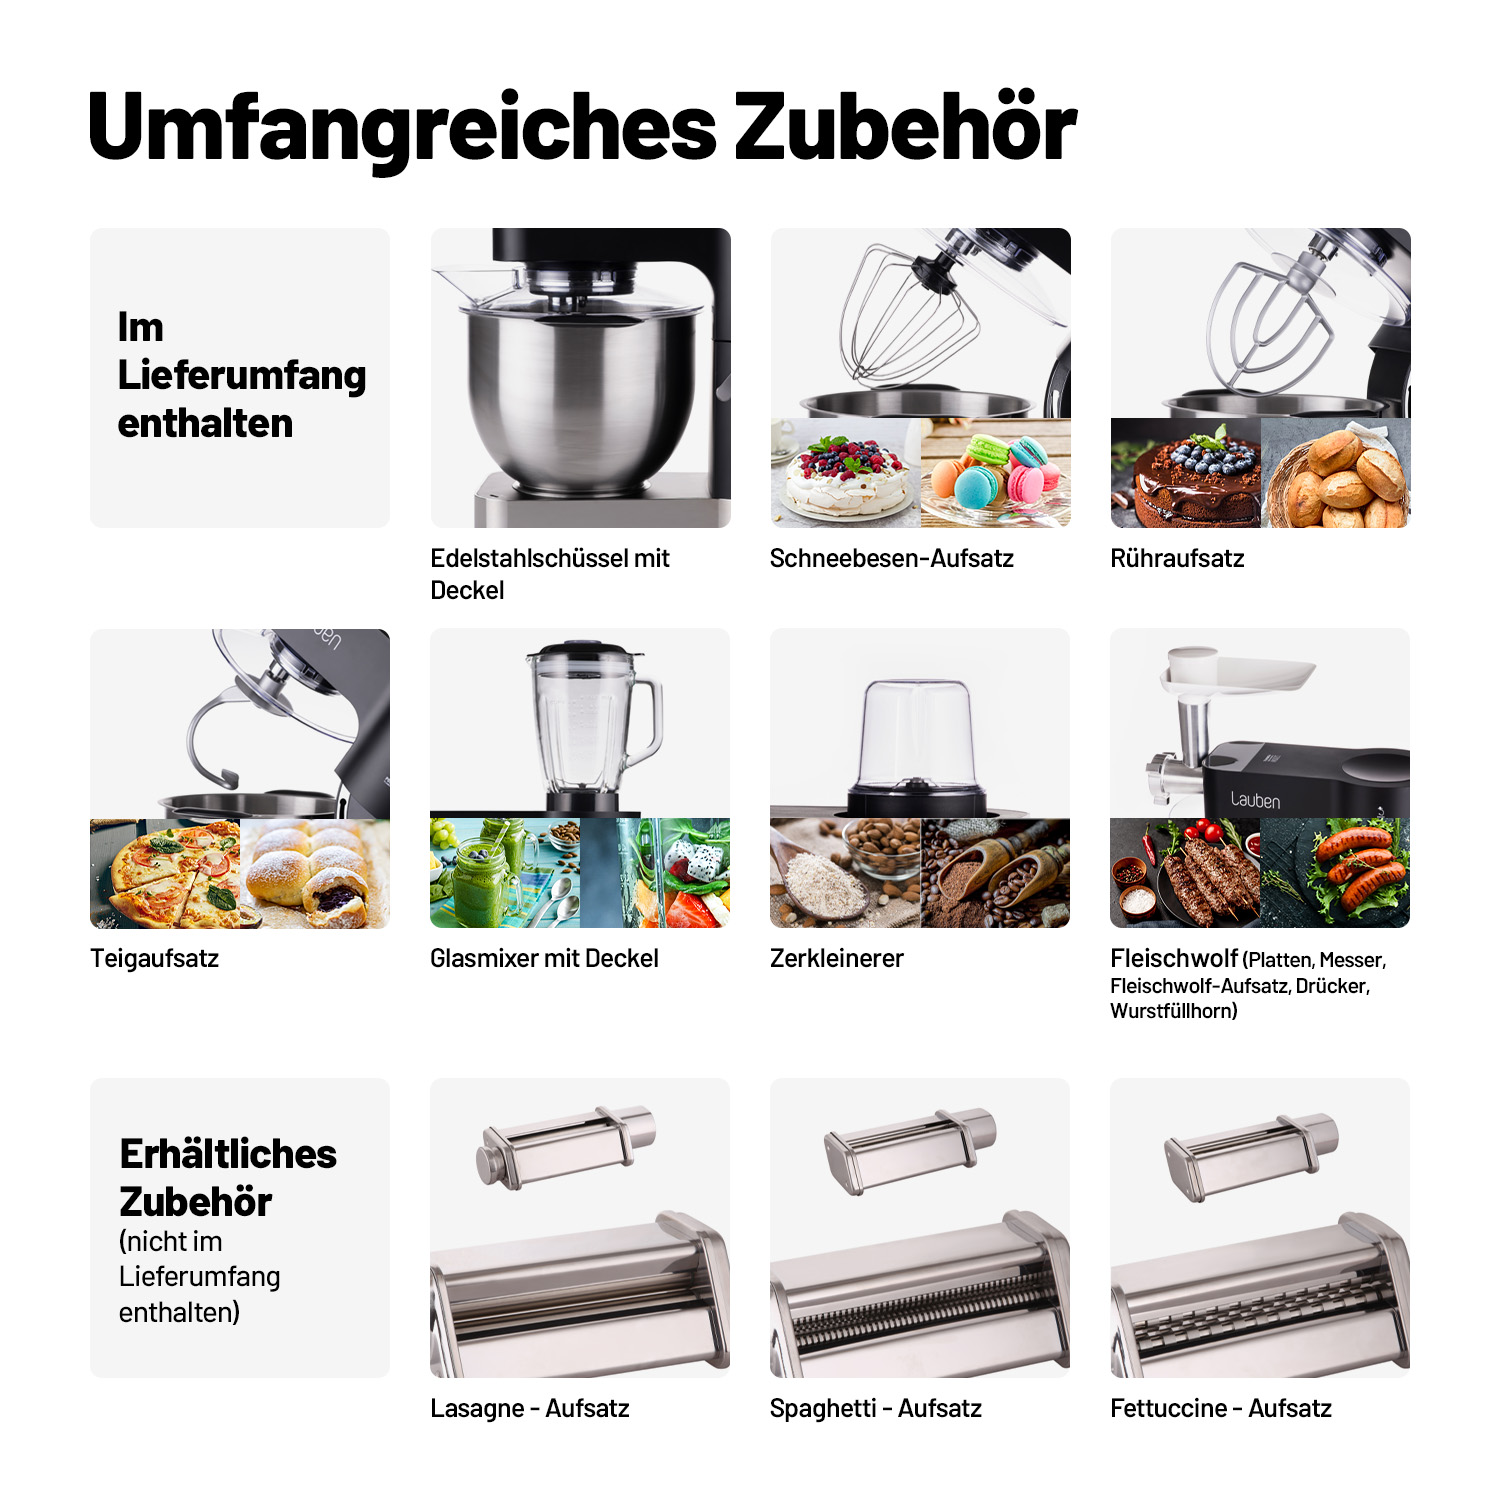 LAUBEN Kitchen Machine 1200BC Küchenmaschine Edelstahl (1200 Watt)